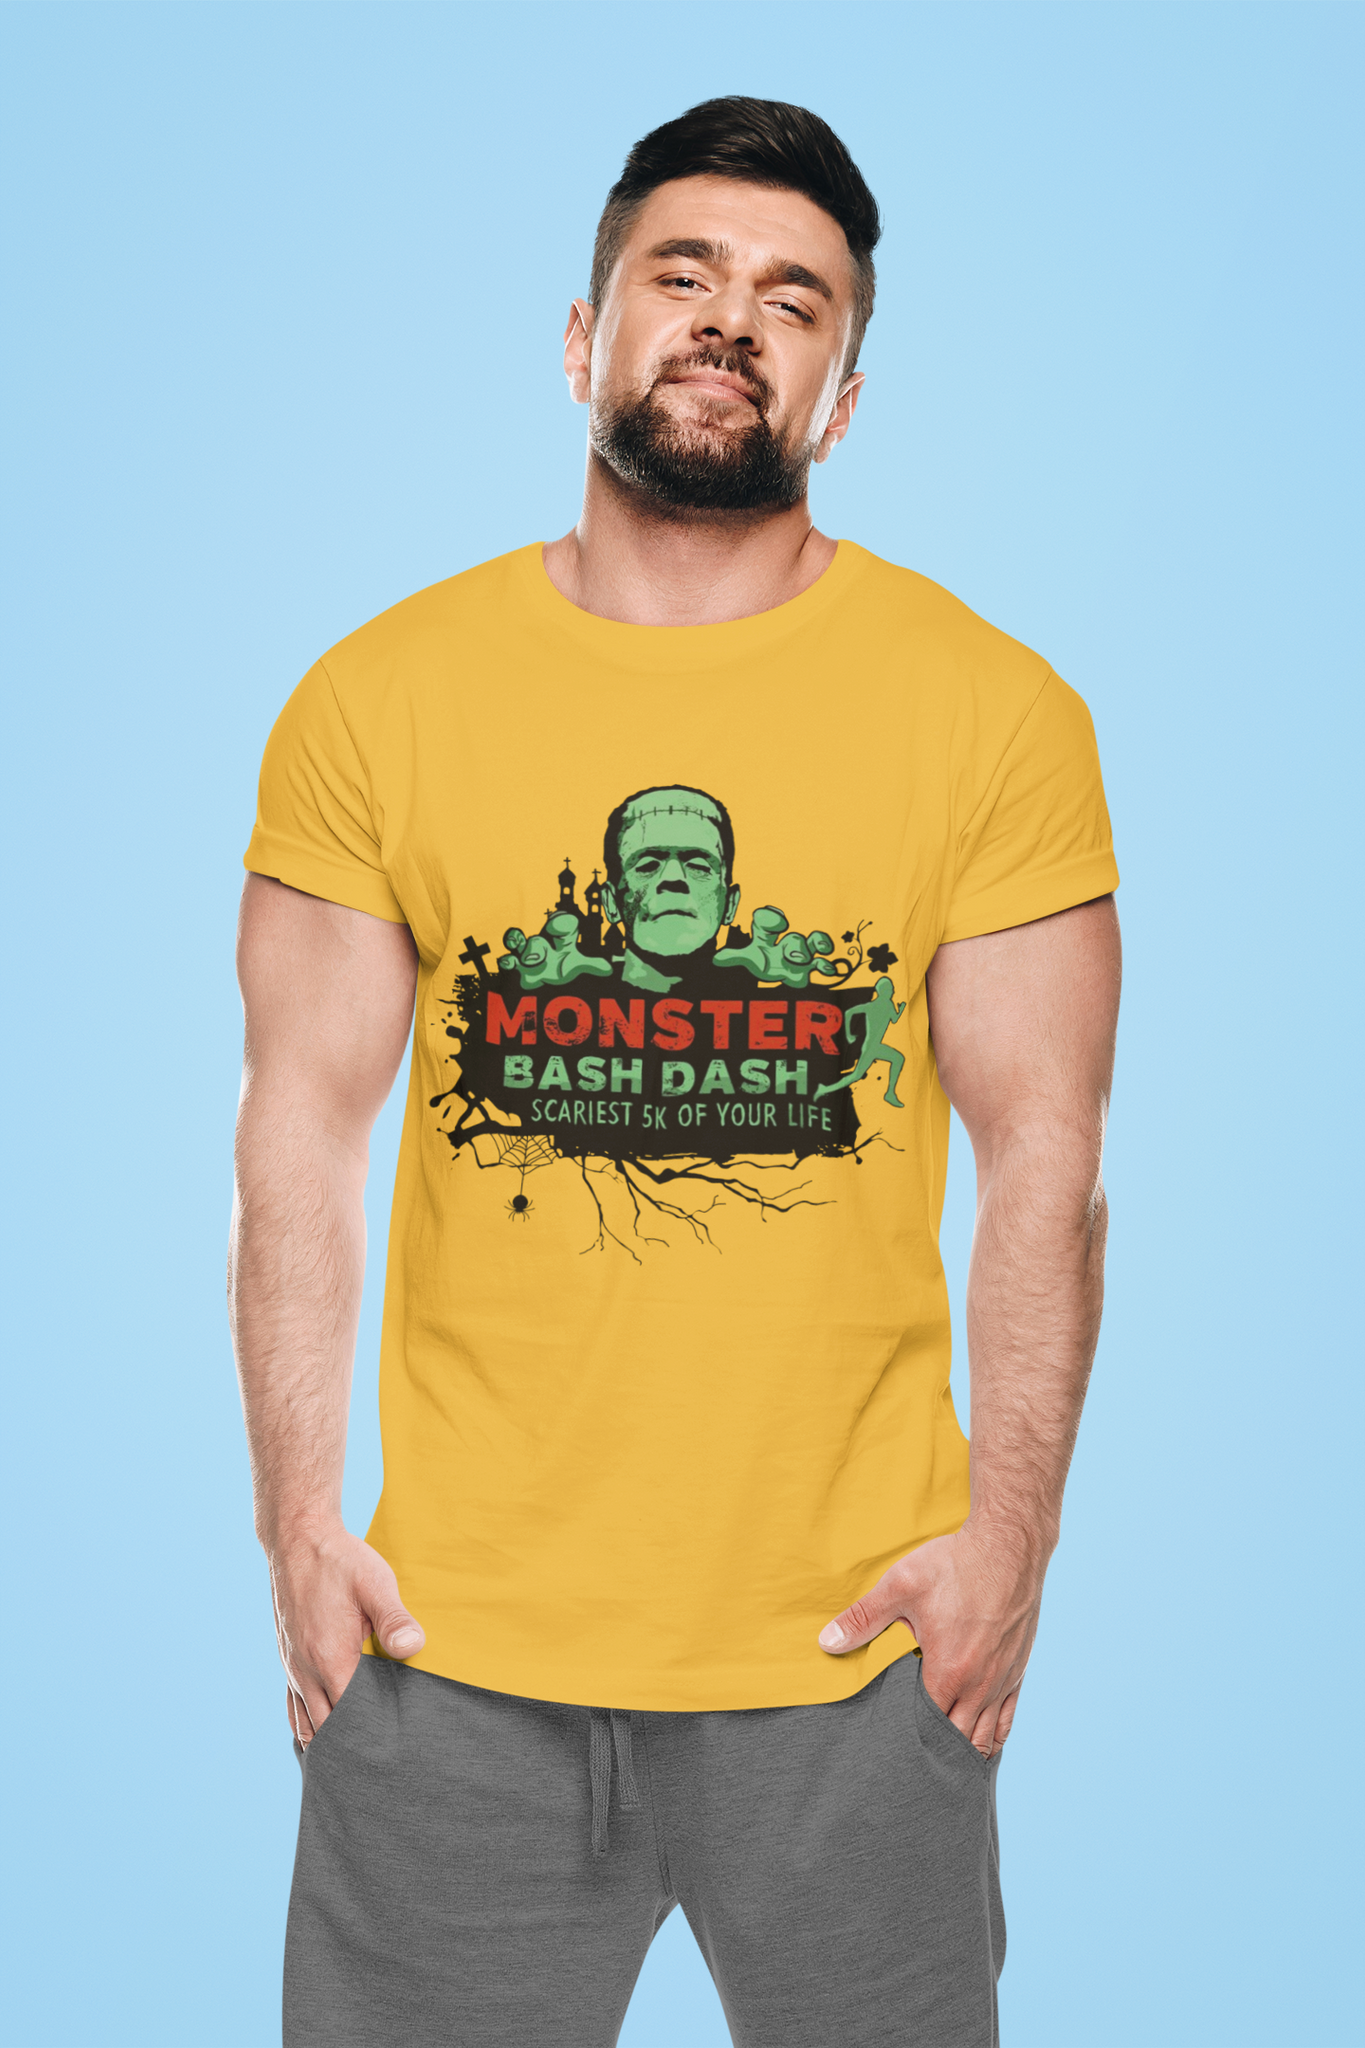 Frankenstein T Shirt, Monster Bash Dash Tshirt, The Monster T Shirt, Halloween Gifts